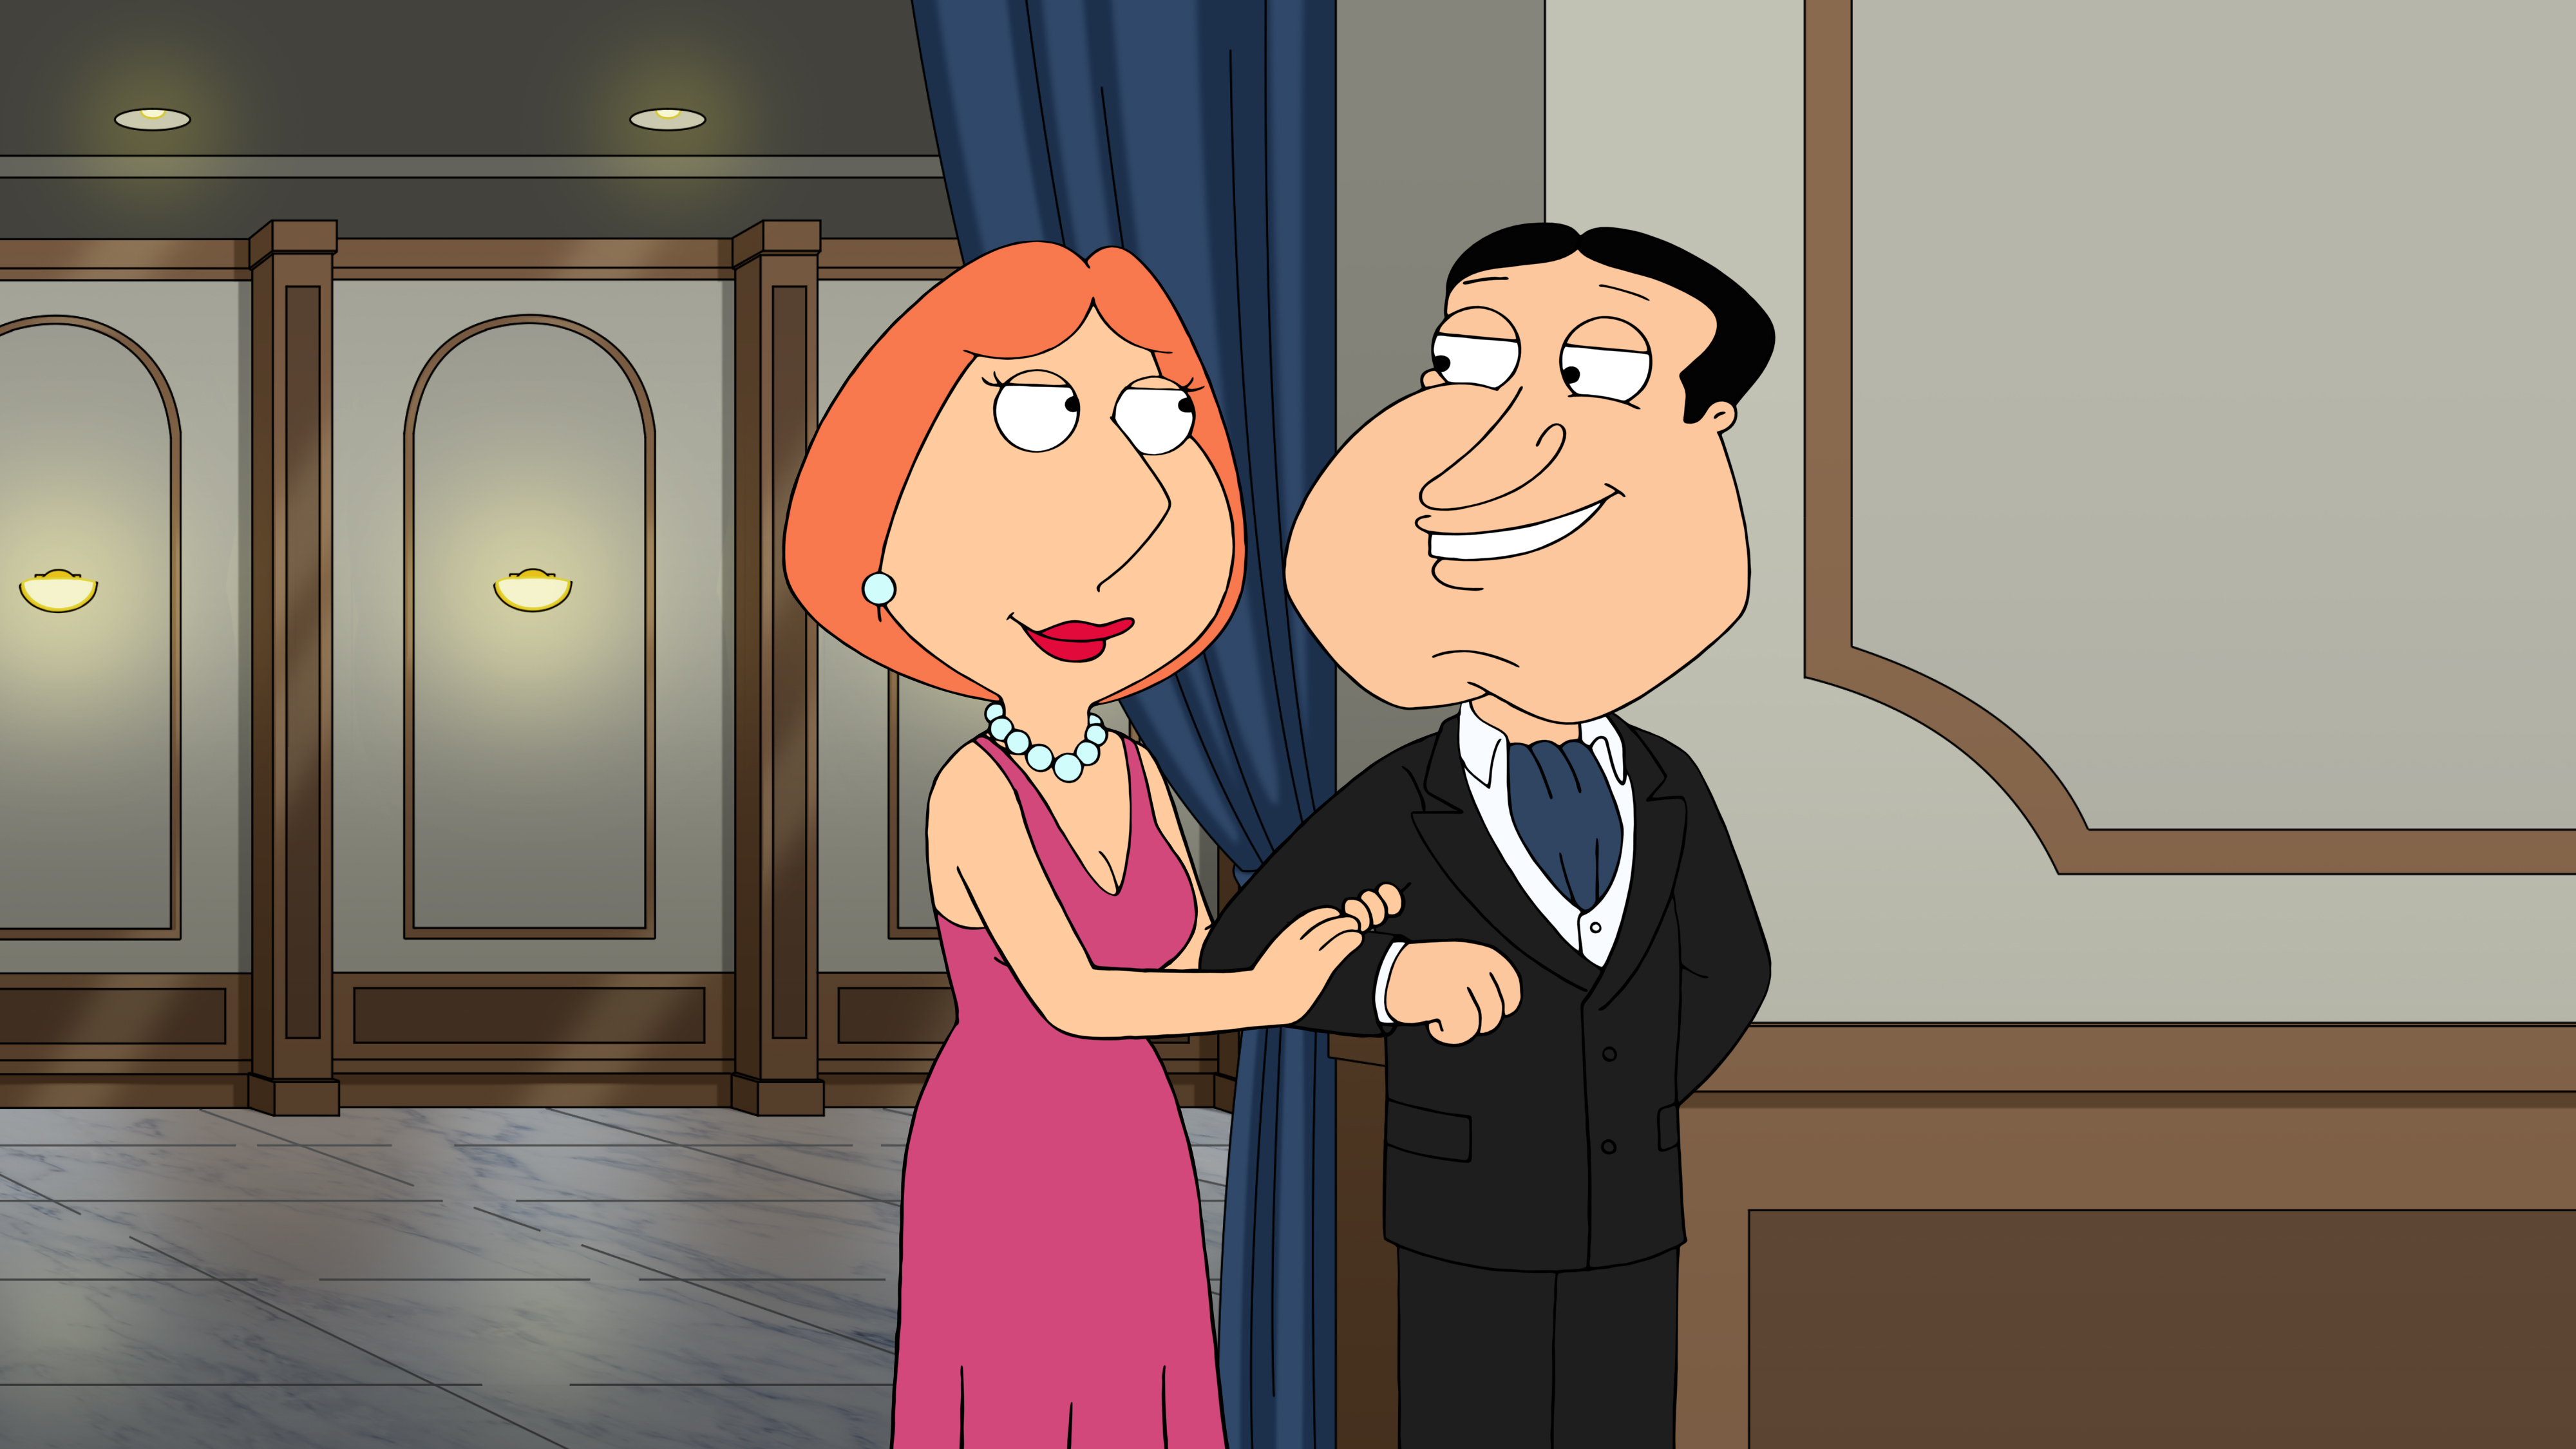 Family Guy: The Lois Quagmire | Season 20 | Episode 12